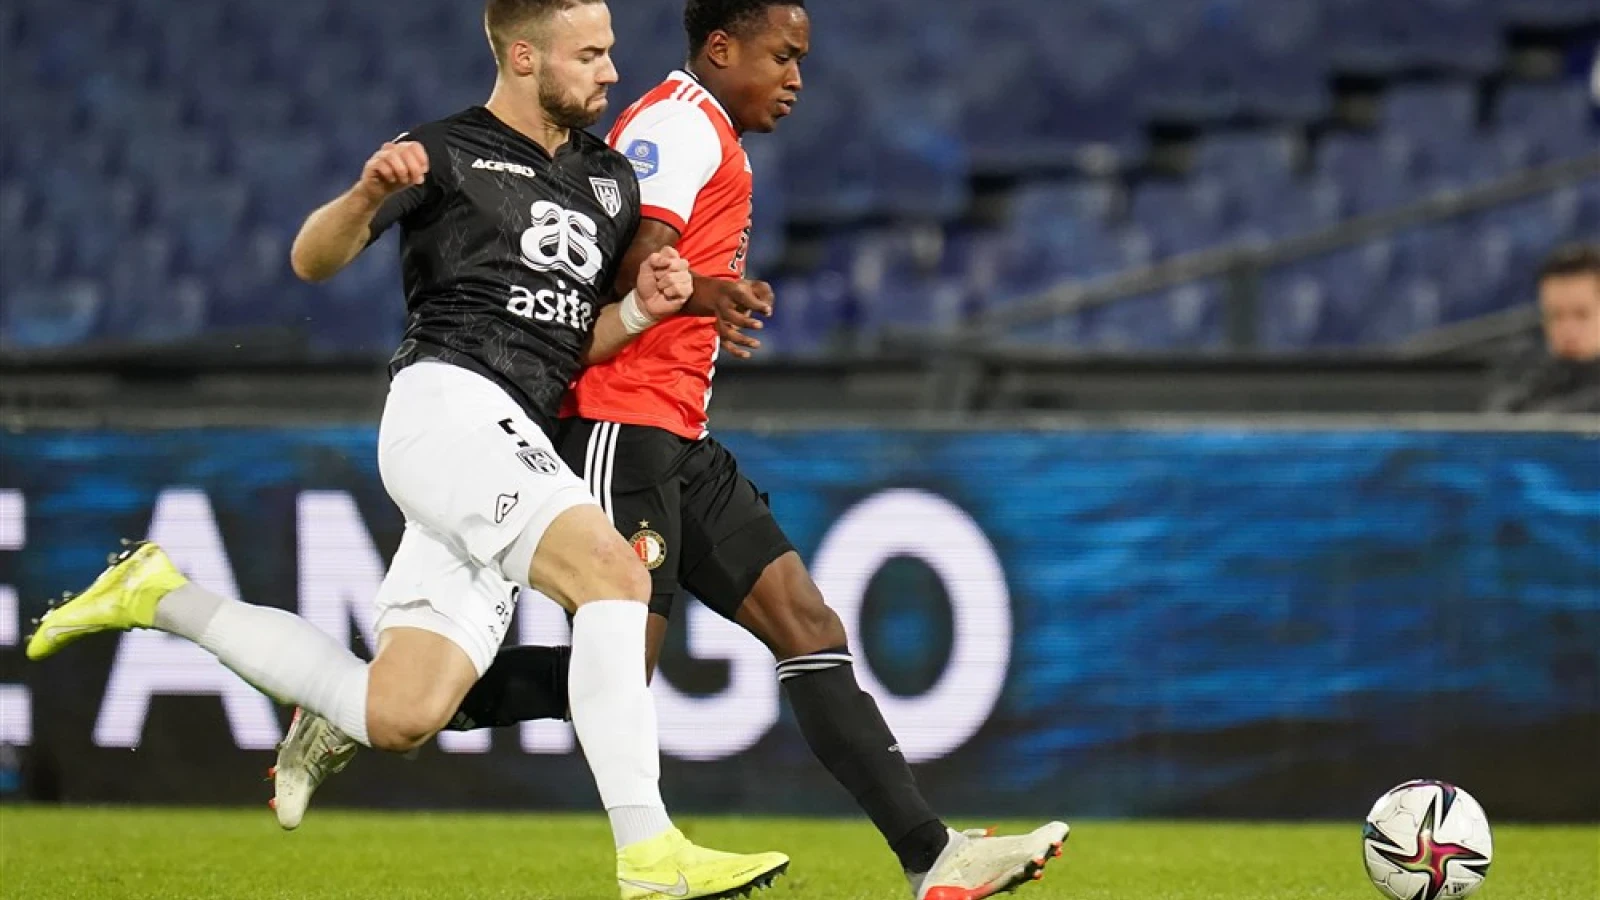 LIVE | Feyenoord - Heracles Almelo 2-1 | Einde wedstrijd